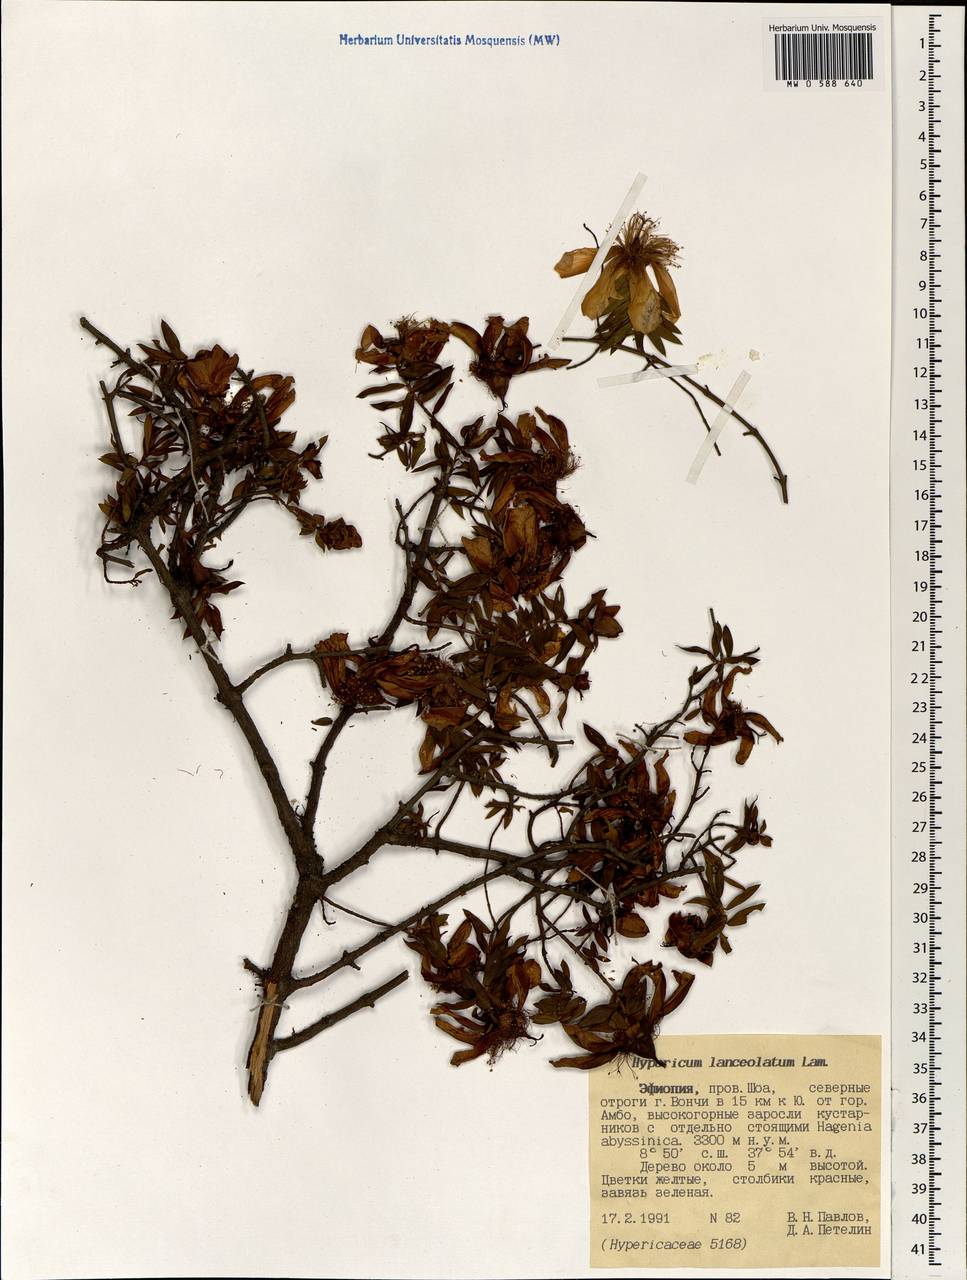 Hypericum lanceolatum, Africa (AFR) (Ethiopia)